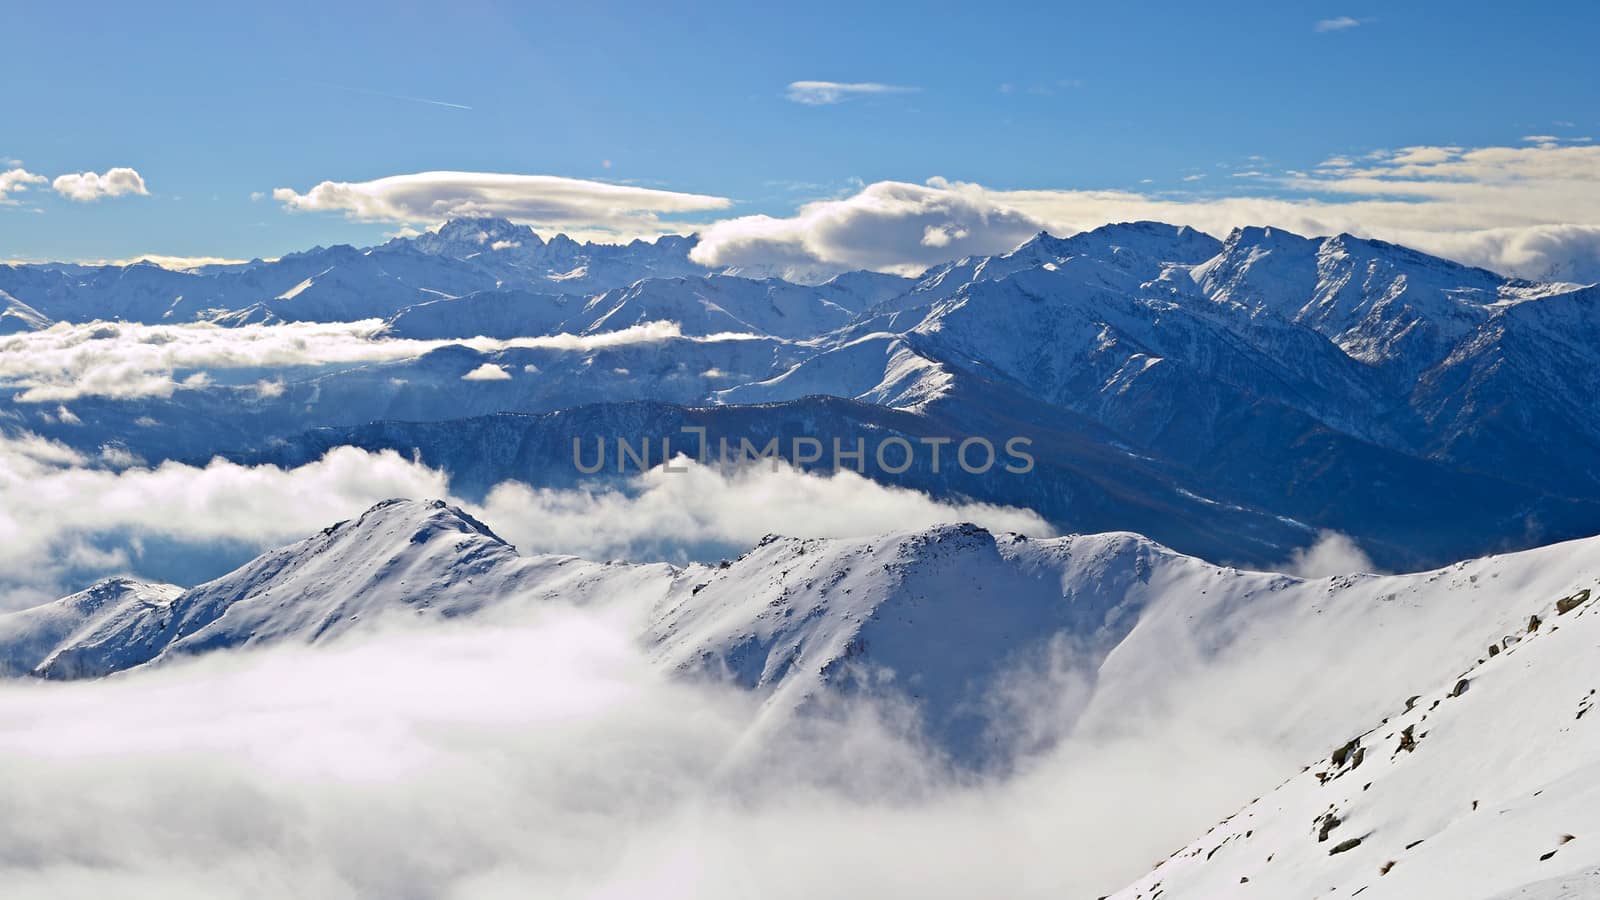 Alpine arc in winter by fbxx